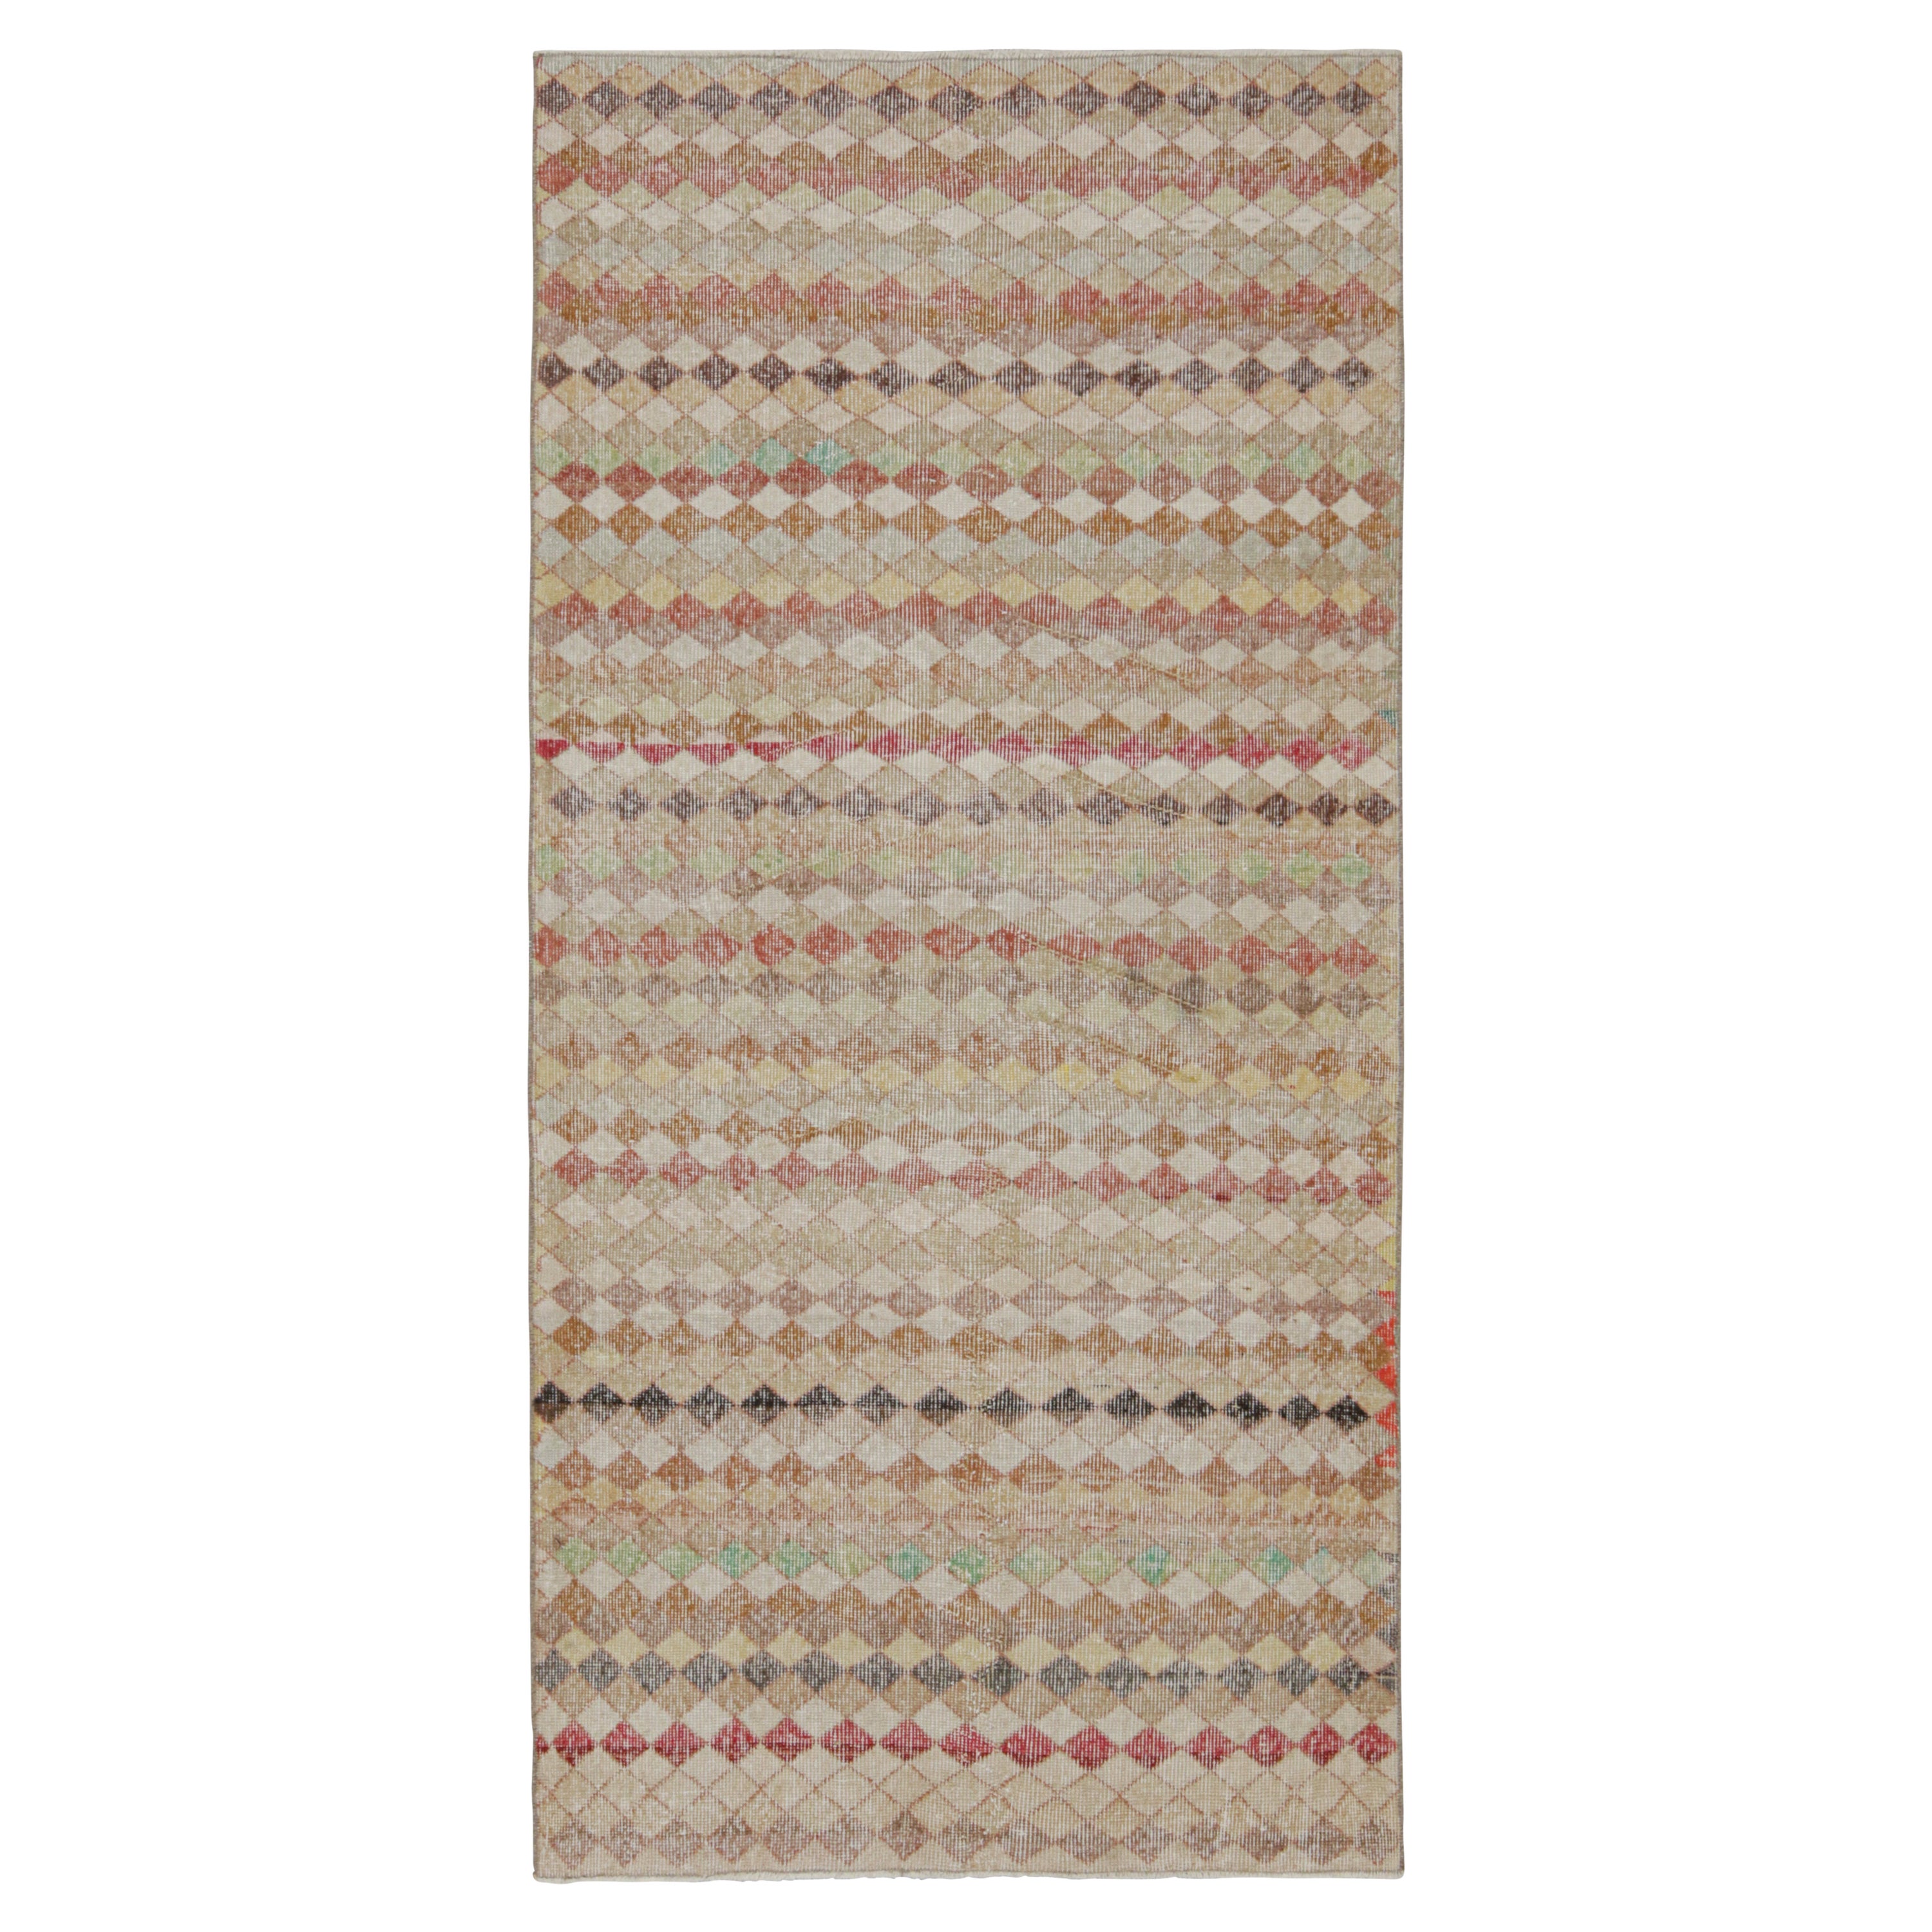 Zeki Müren Teppich mit polychromem geometrischem Muster von Rug & Kilim